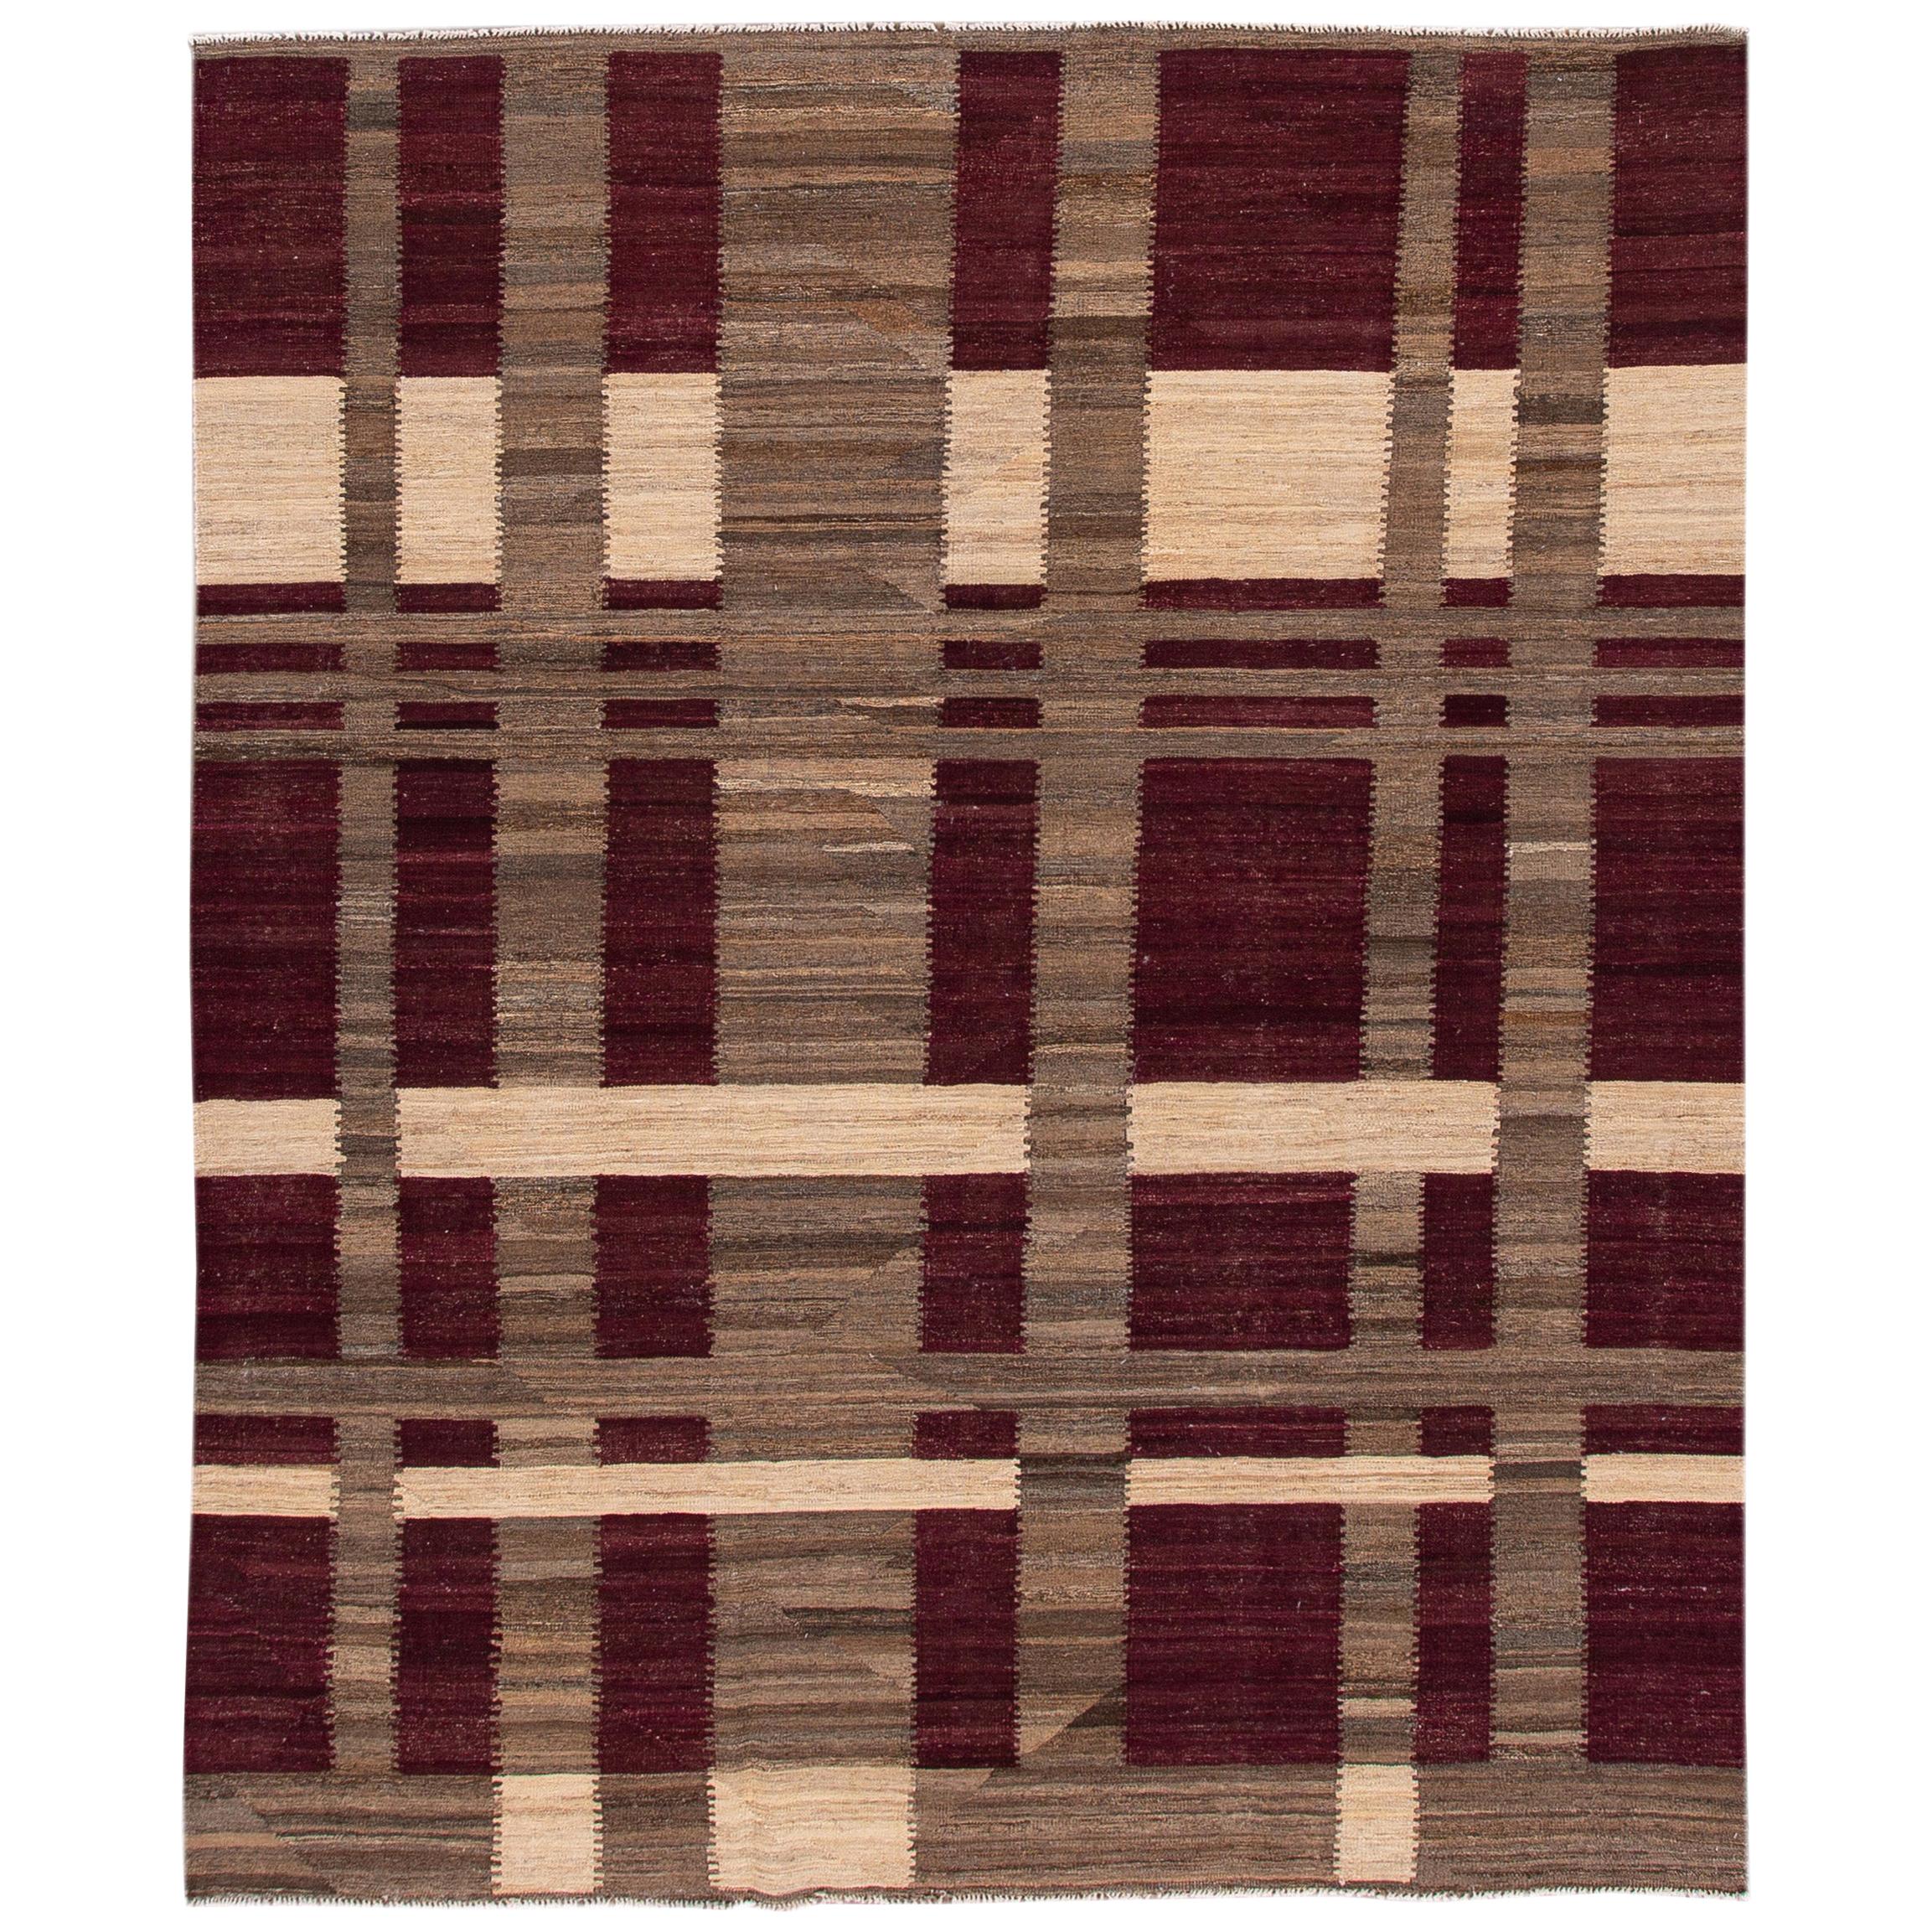 Moderner flachgewebter Kilim-Teppich aus Wolle in Burgund und Brown mit geometrischen Motiven